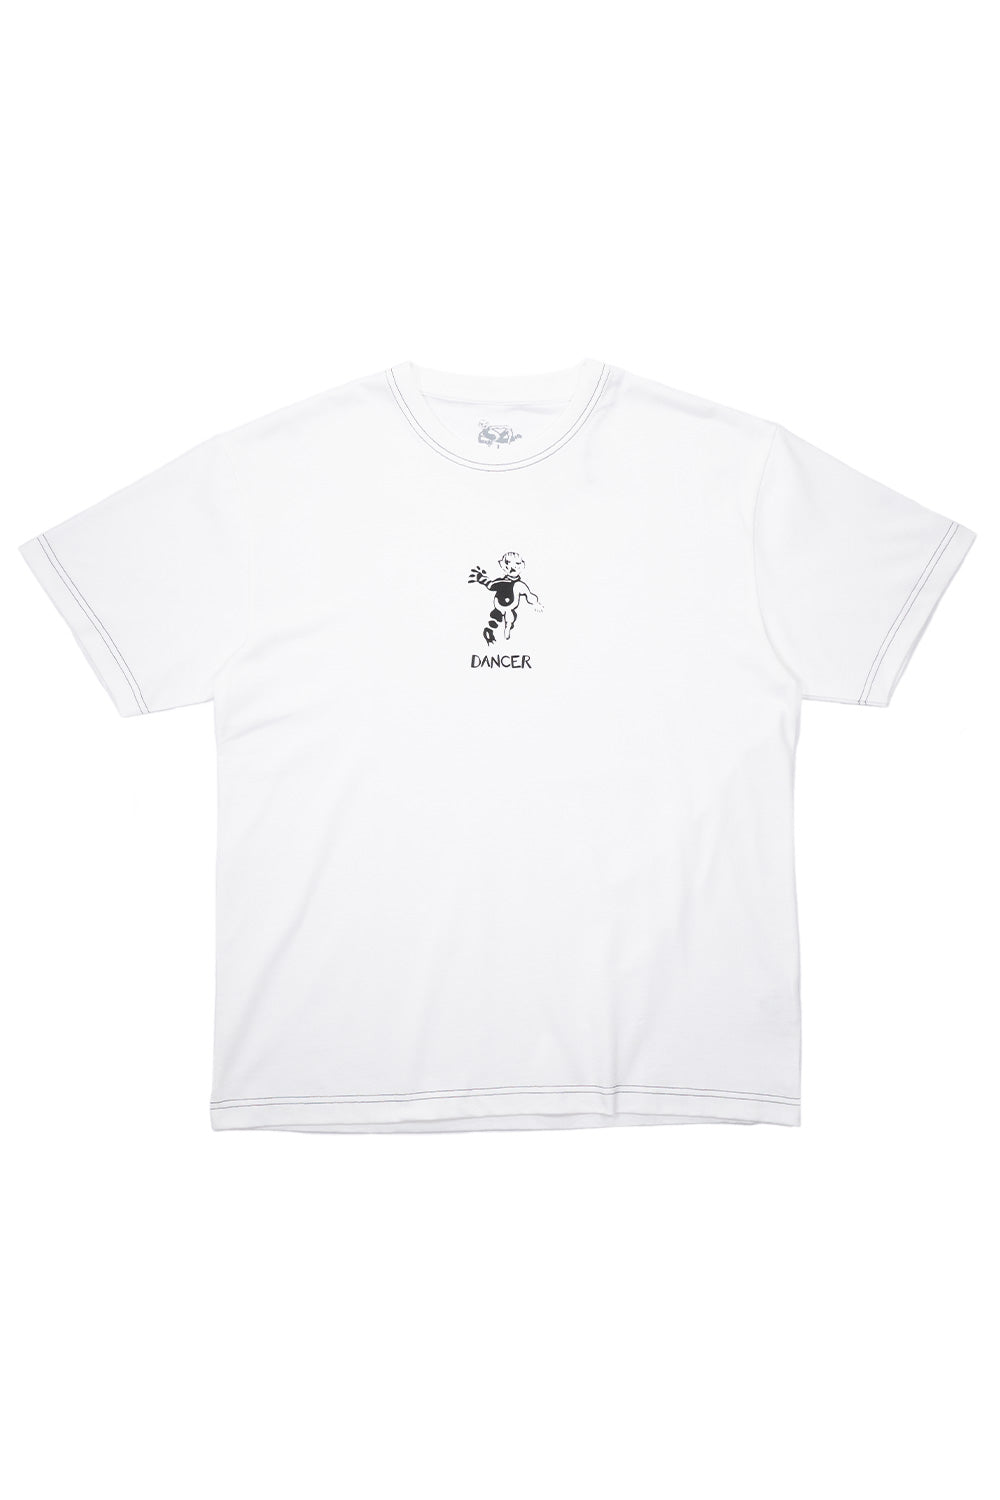 Dancer OG Logo T-Shirt White (Black Stitching) - BONKERS